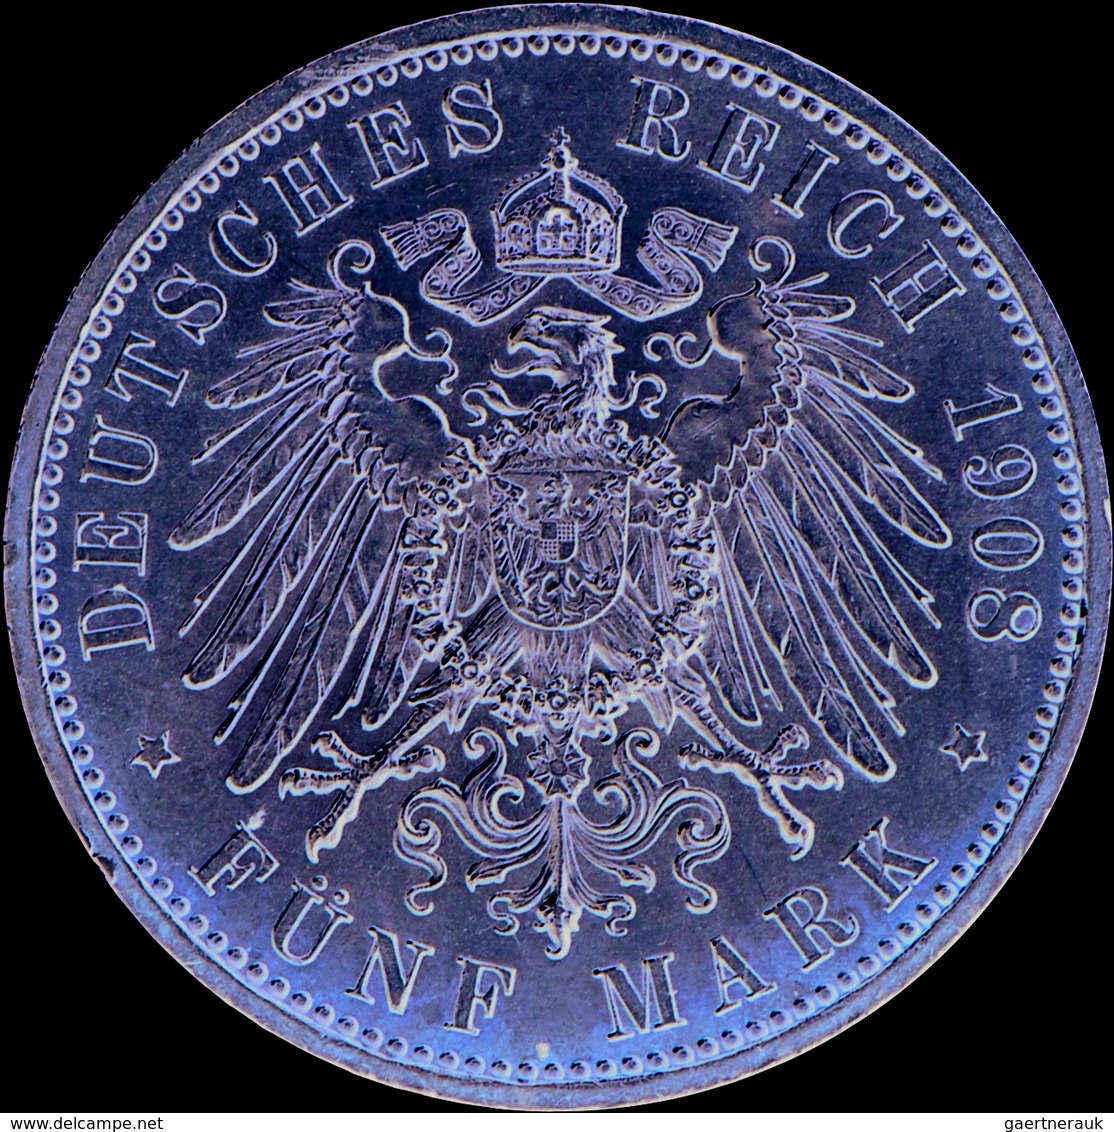 Sachsen-Weimar-Eisenach: Carl Alexander 1853-1901: 5 Mark 1908, 350 Jahre Universität Jena, Jaeger 1 - Taler Et Doppeltaler